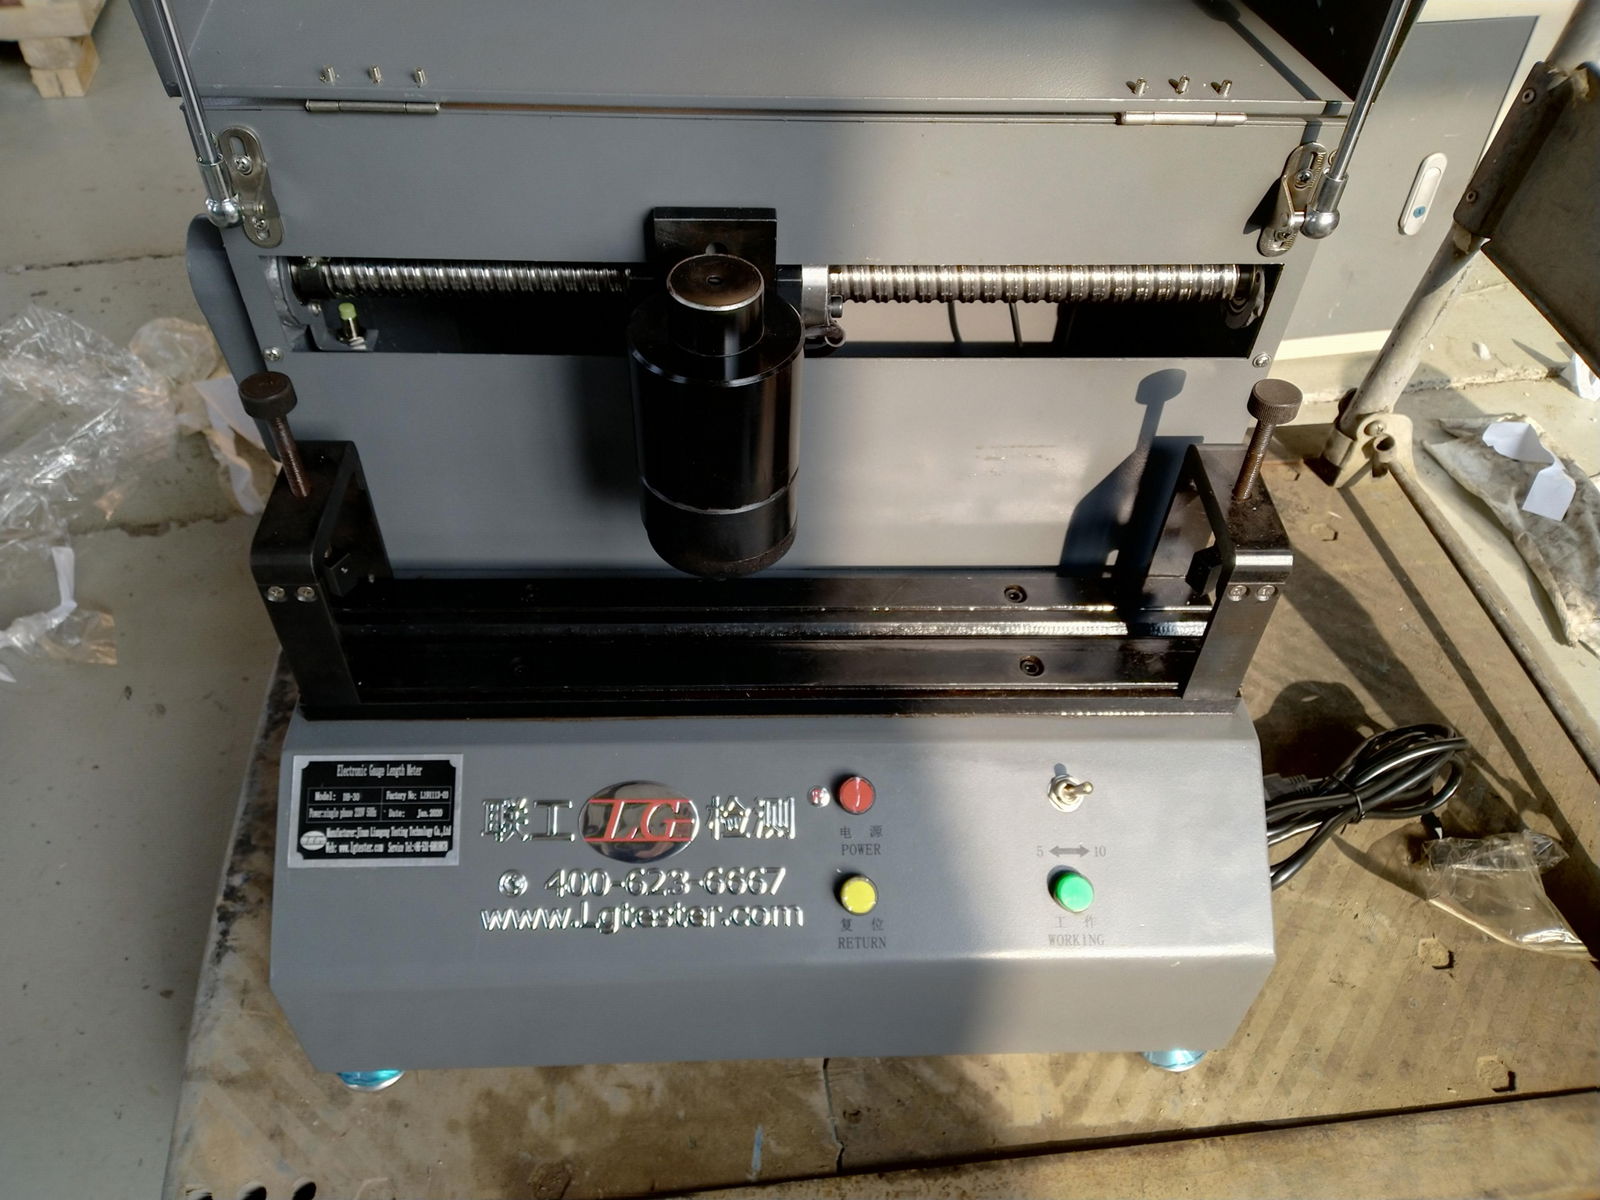 Tensile testing machine usage rebar striking point machine (DB-30) 4